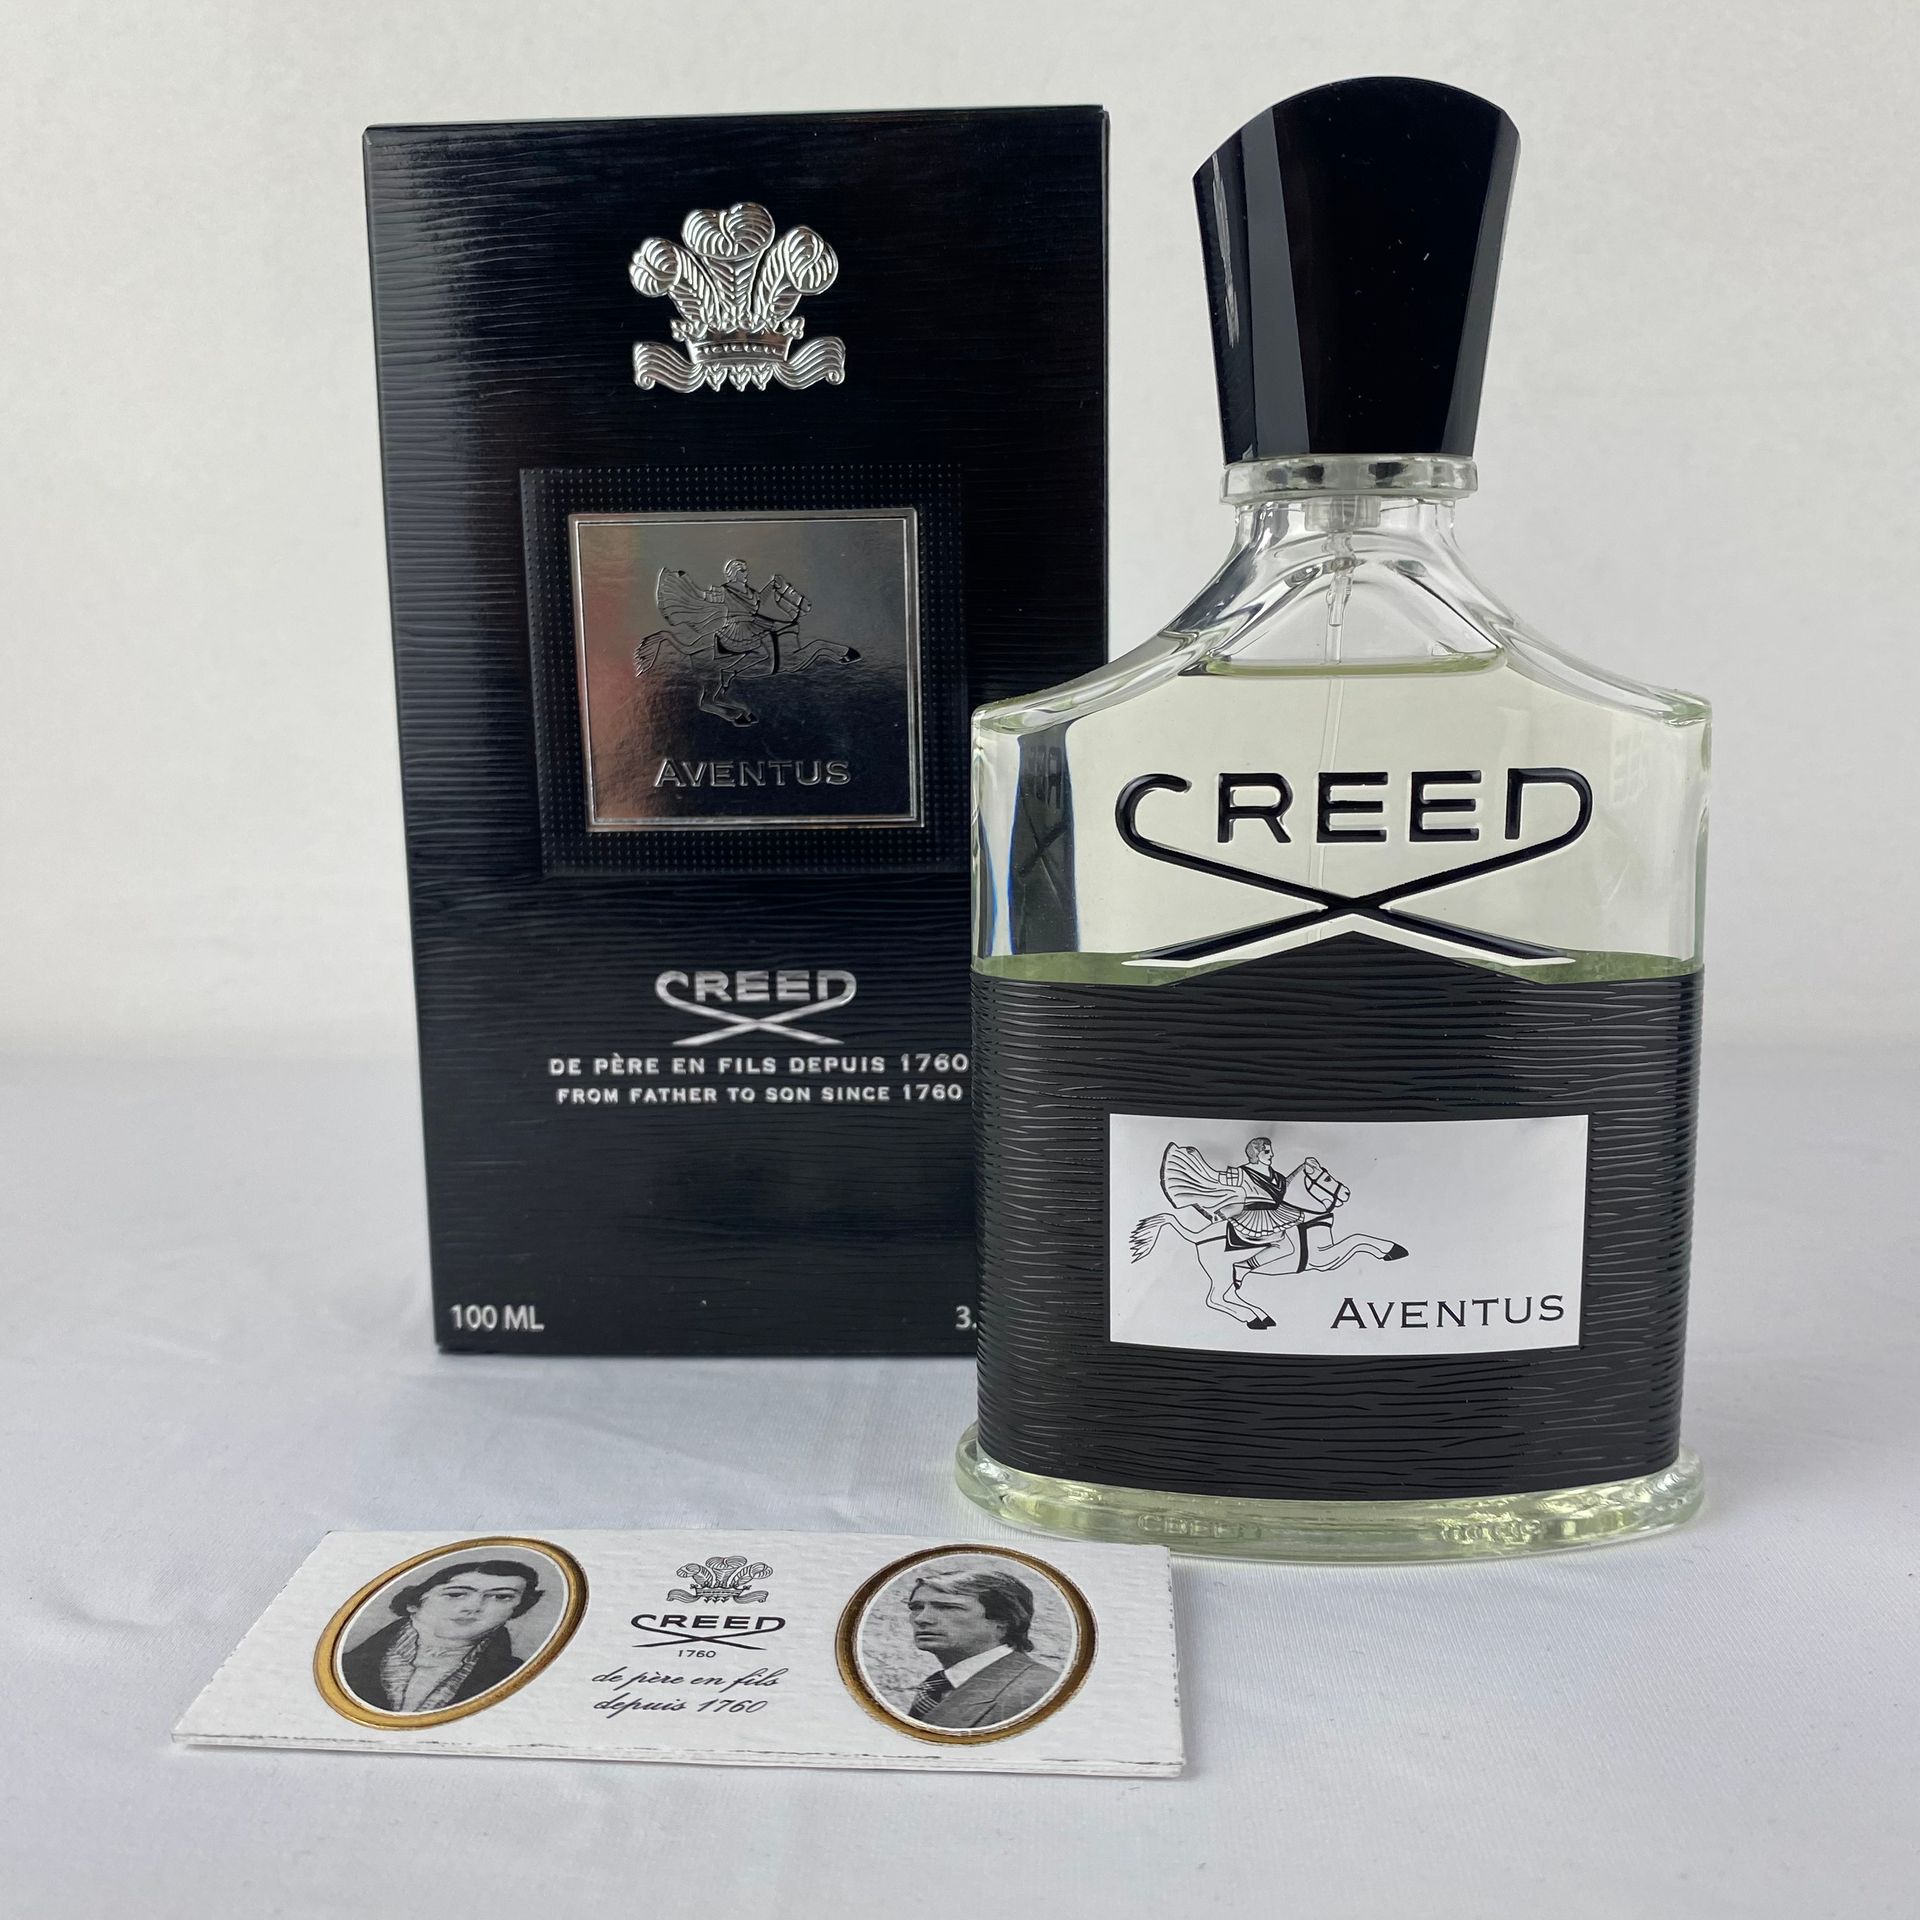 CREED AVENTUS Set de 2 Creed Aventus Eaux de Parfum 100ml.